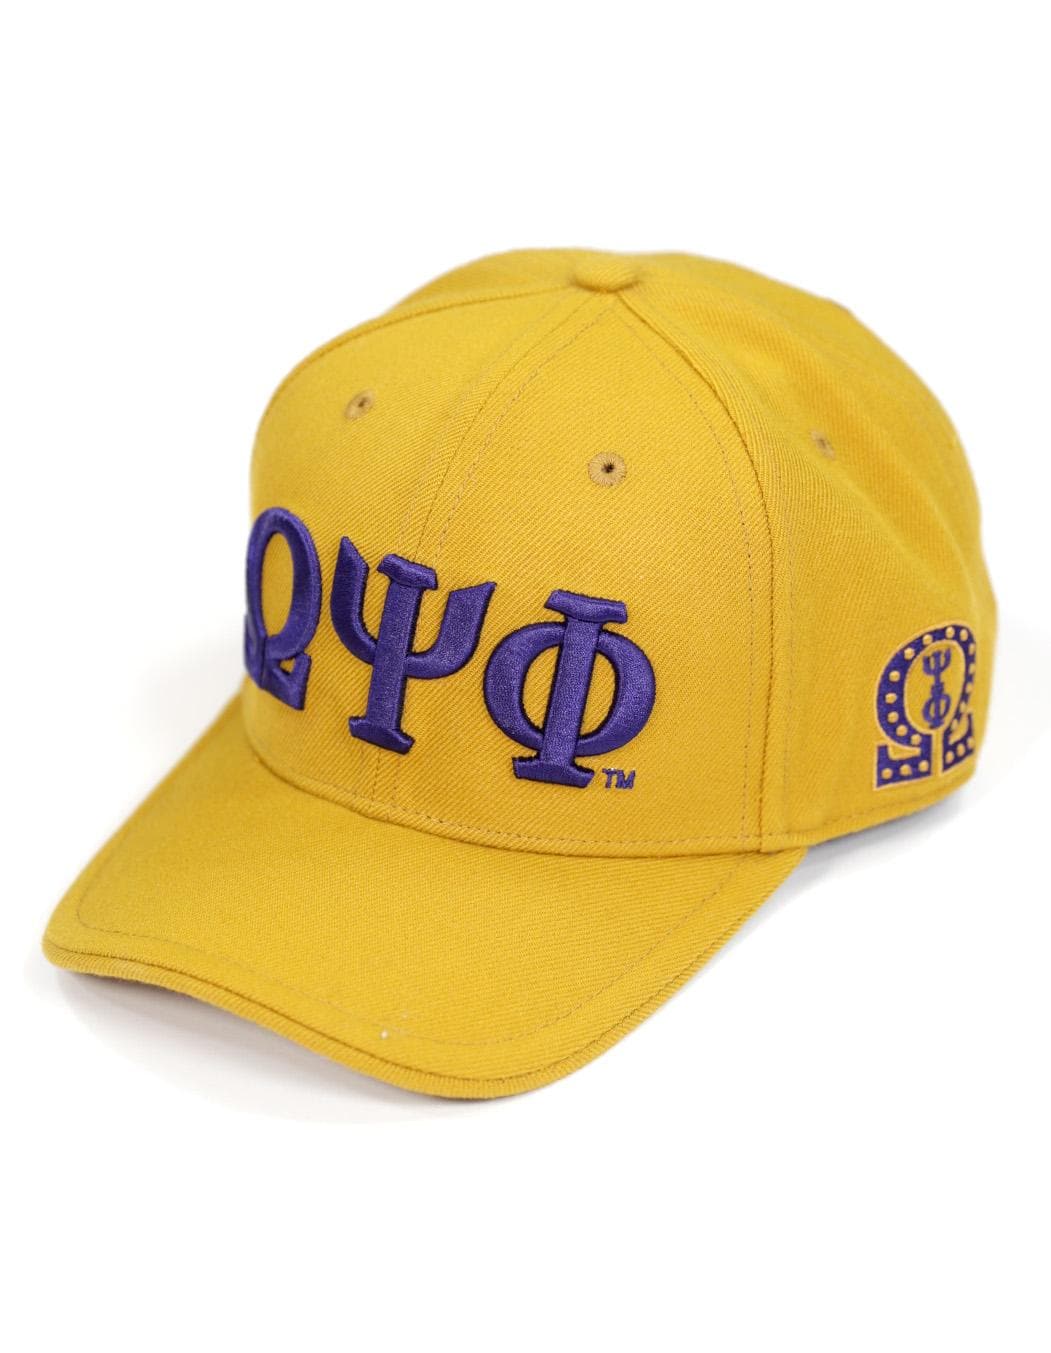 Omega Ps Phi Gold Greek Letter Cap